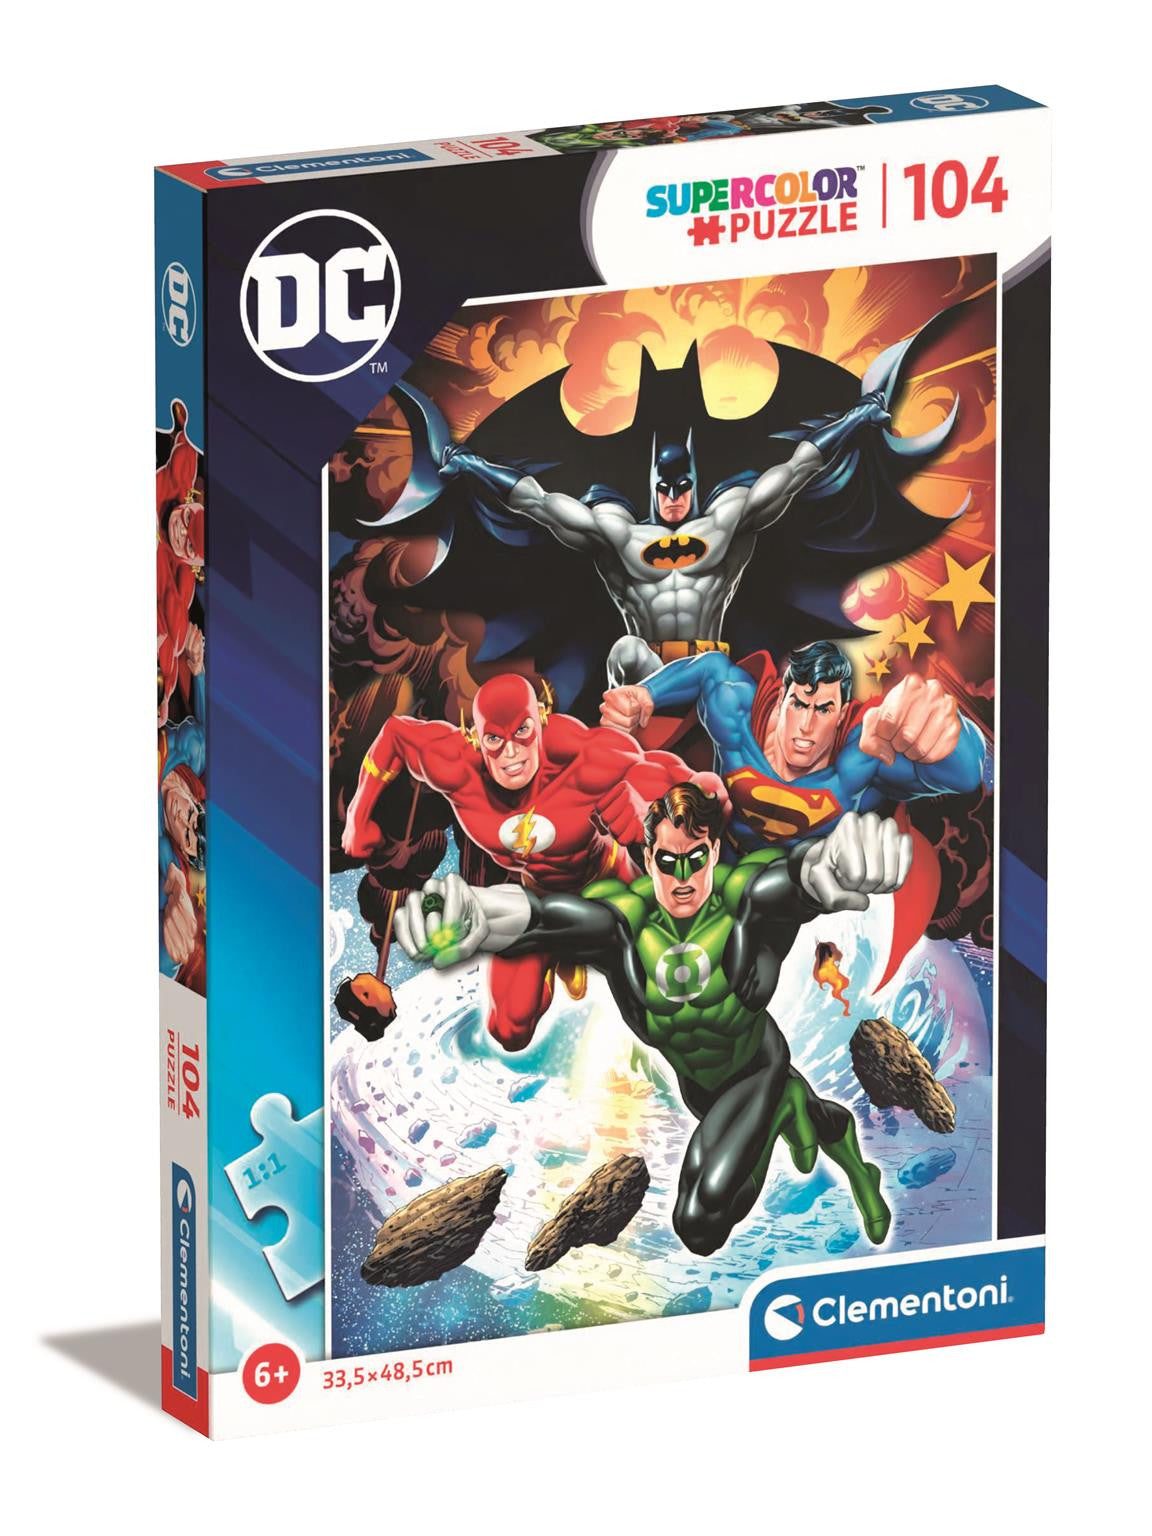 Clementoni Puzzle DC Comics Justice League 104 Piece Super (Larger Pieces)